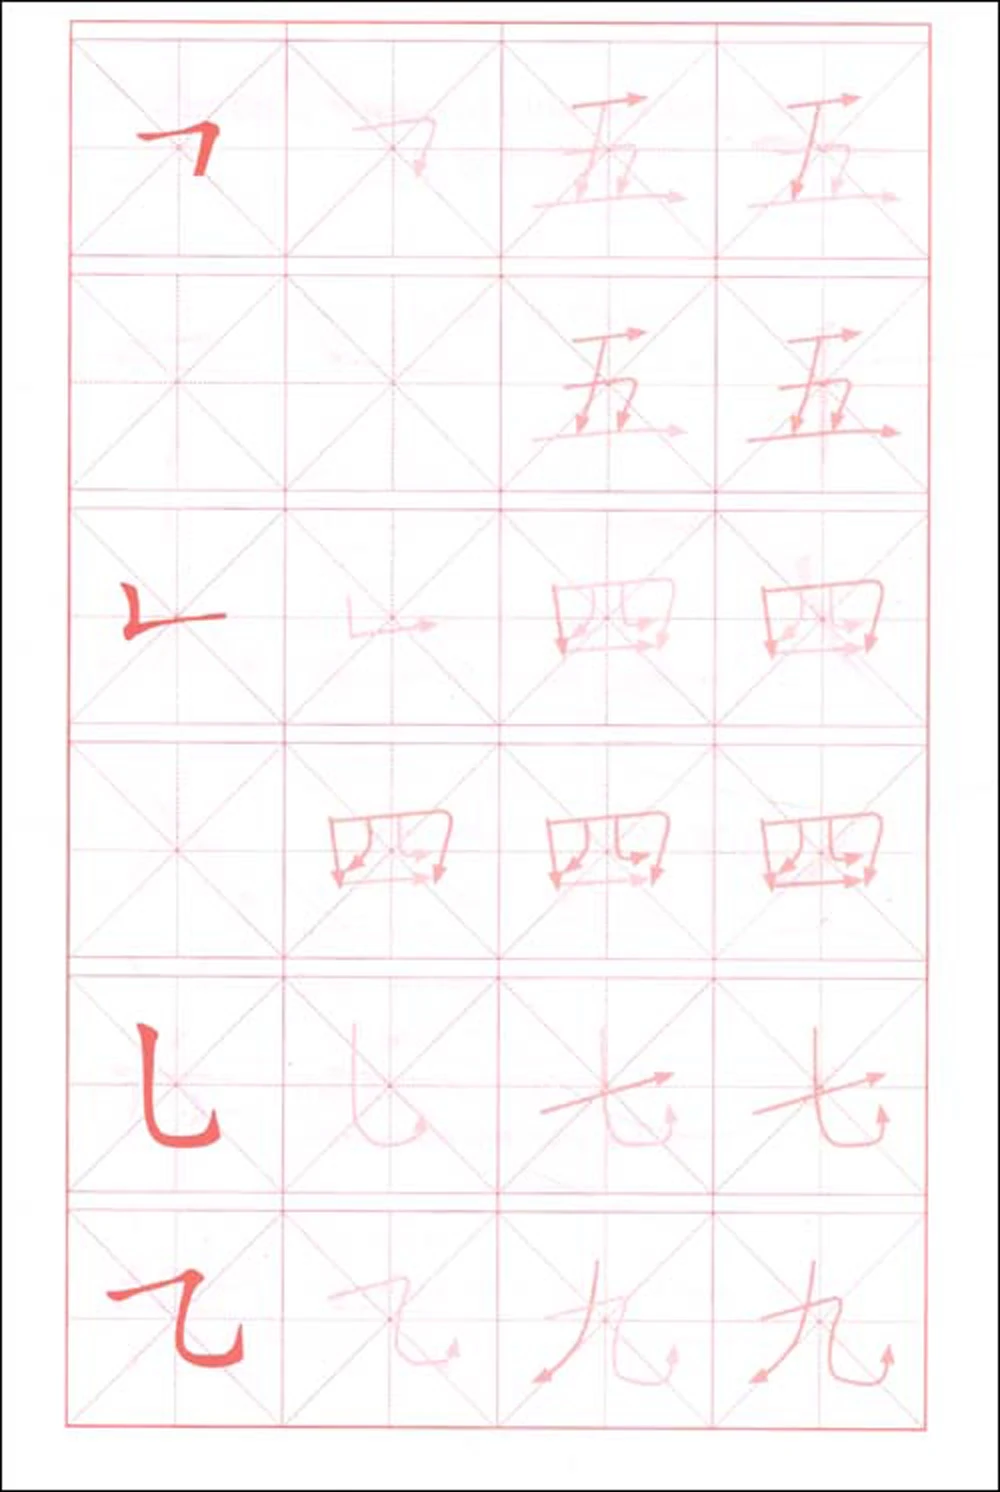 4 шт./компл. книга для начинающих упражнений для письма китайских символов/книга упражнений для письма строительных блоков